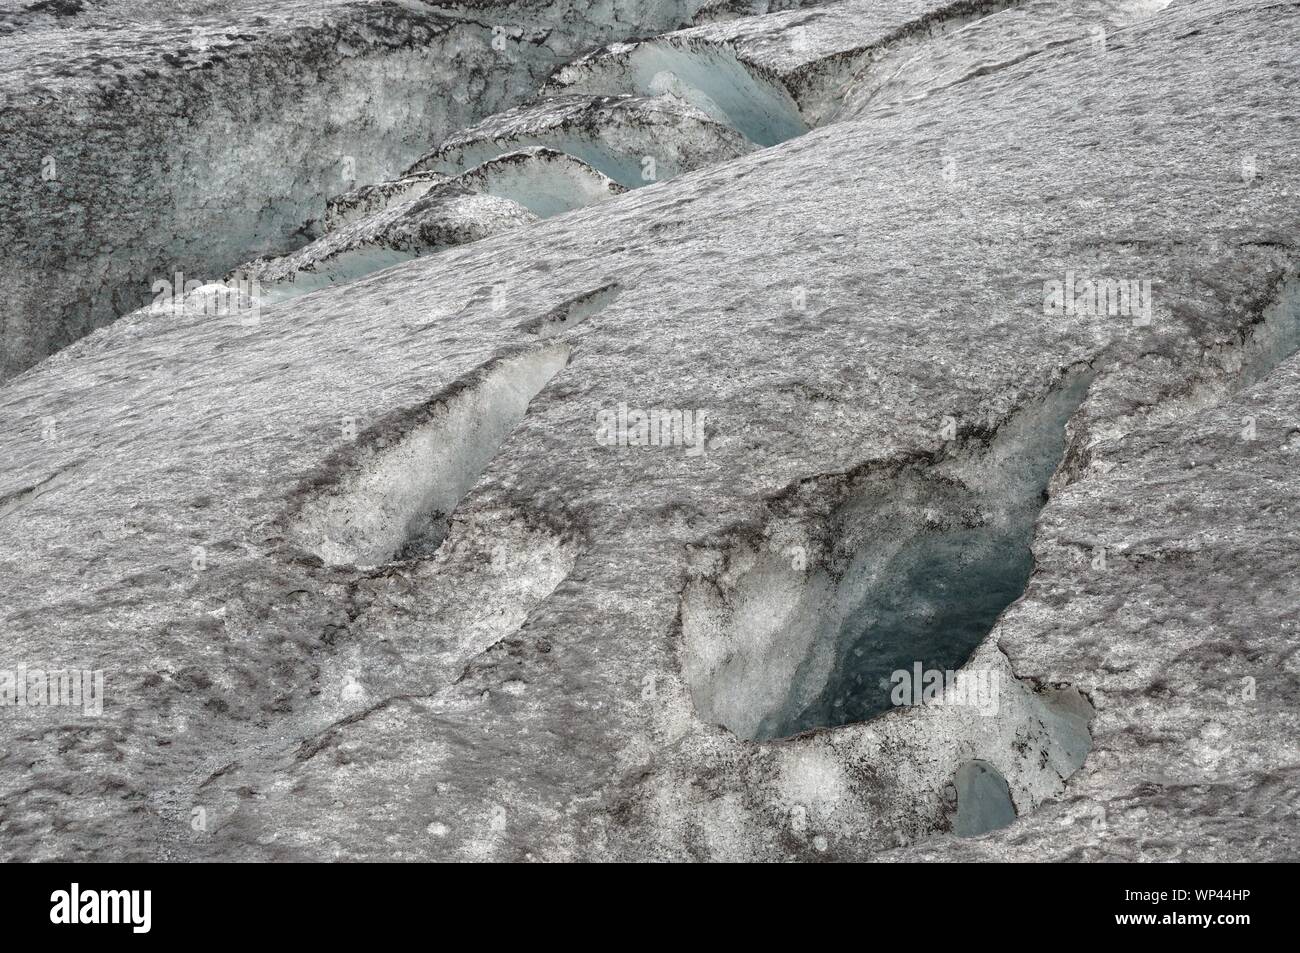 Die Gletscherzunge Sólheimajökull. Risse im eis zeigen blaues Eis. Stock Photo